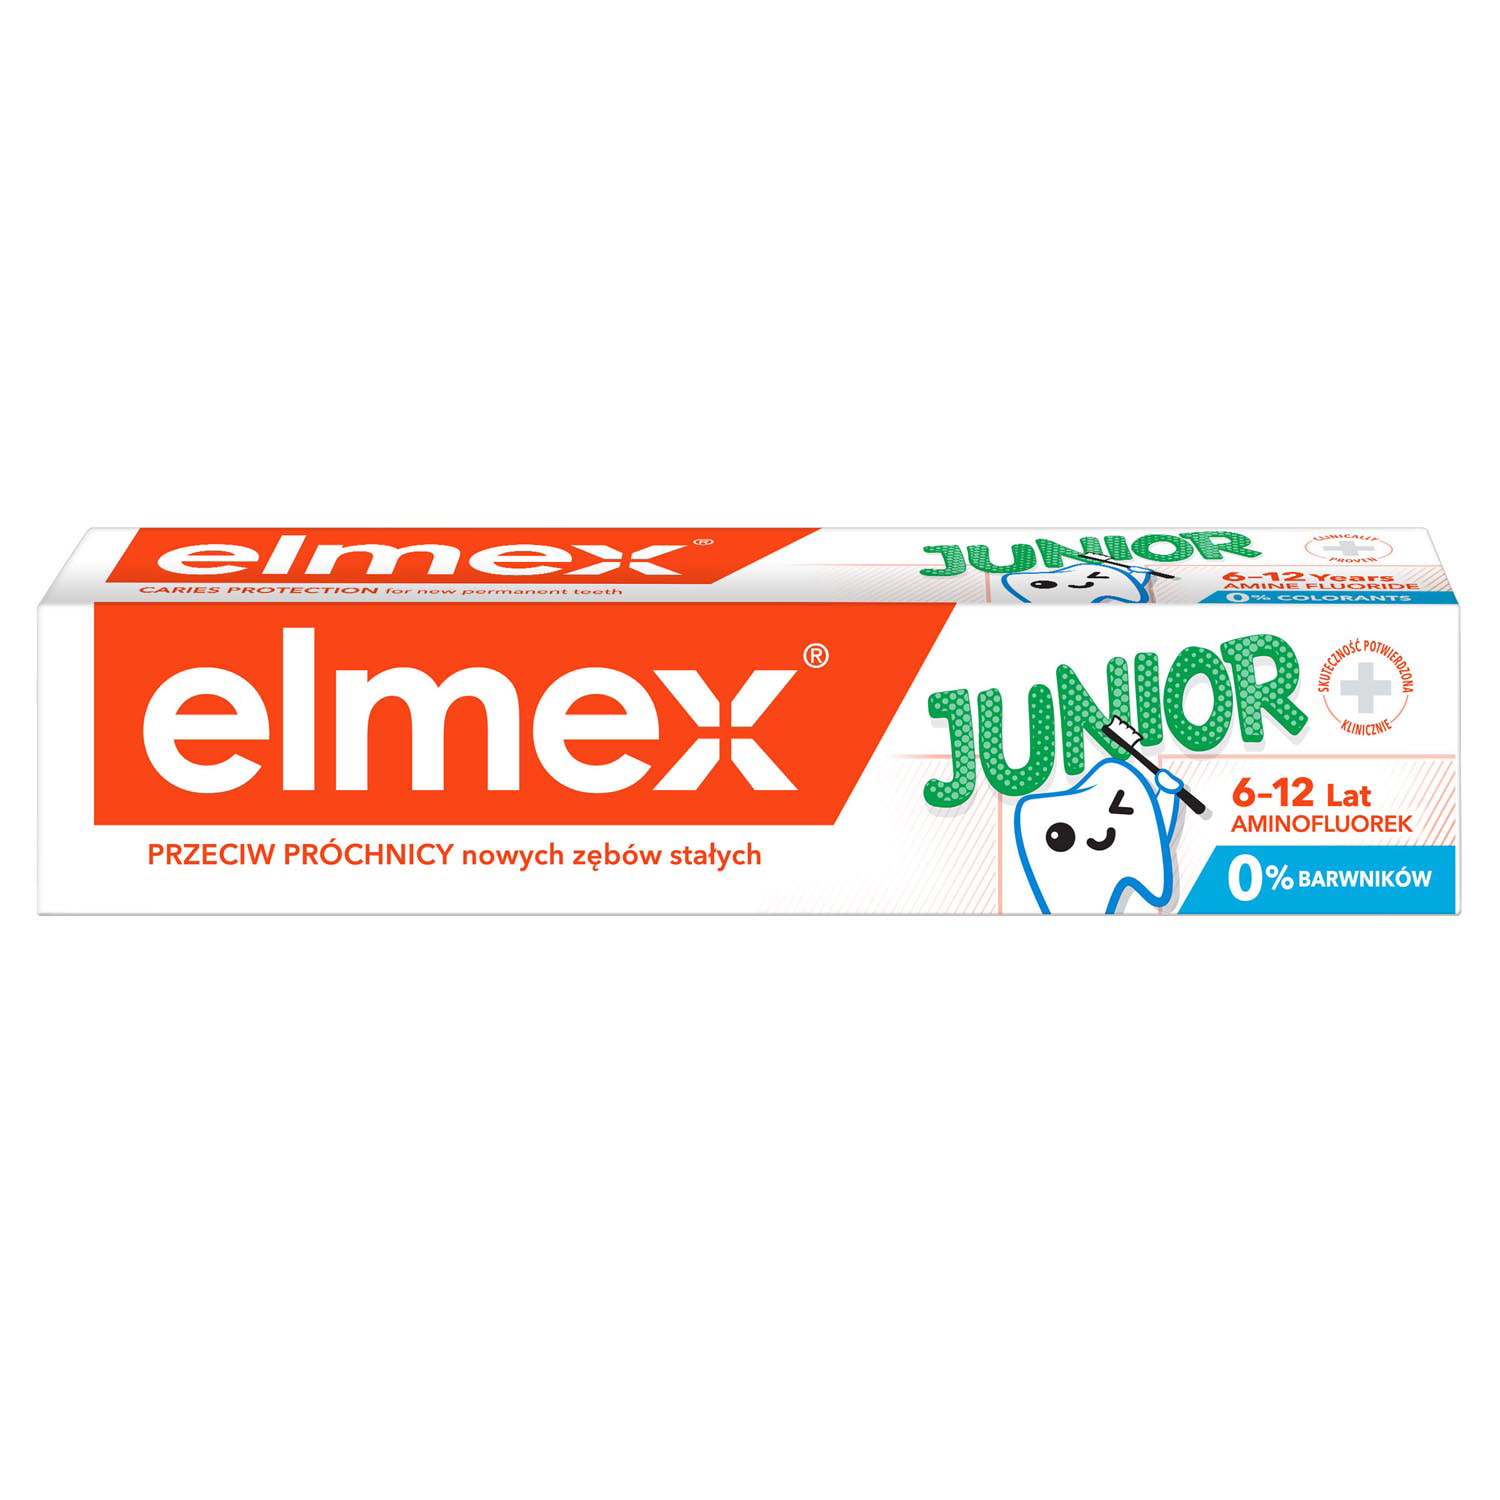 Зубная паста COLGATE Elmex защита от кариеса 75мл (Colgate-Palmolive/Польша)